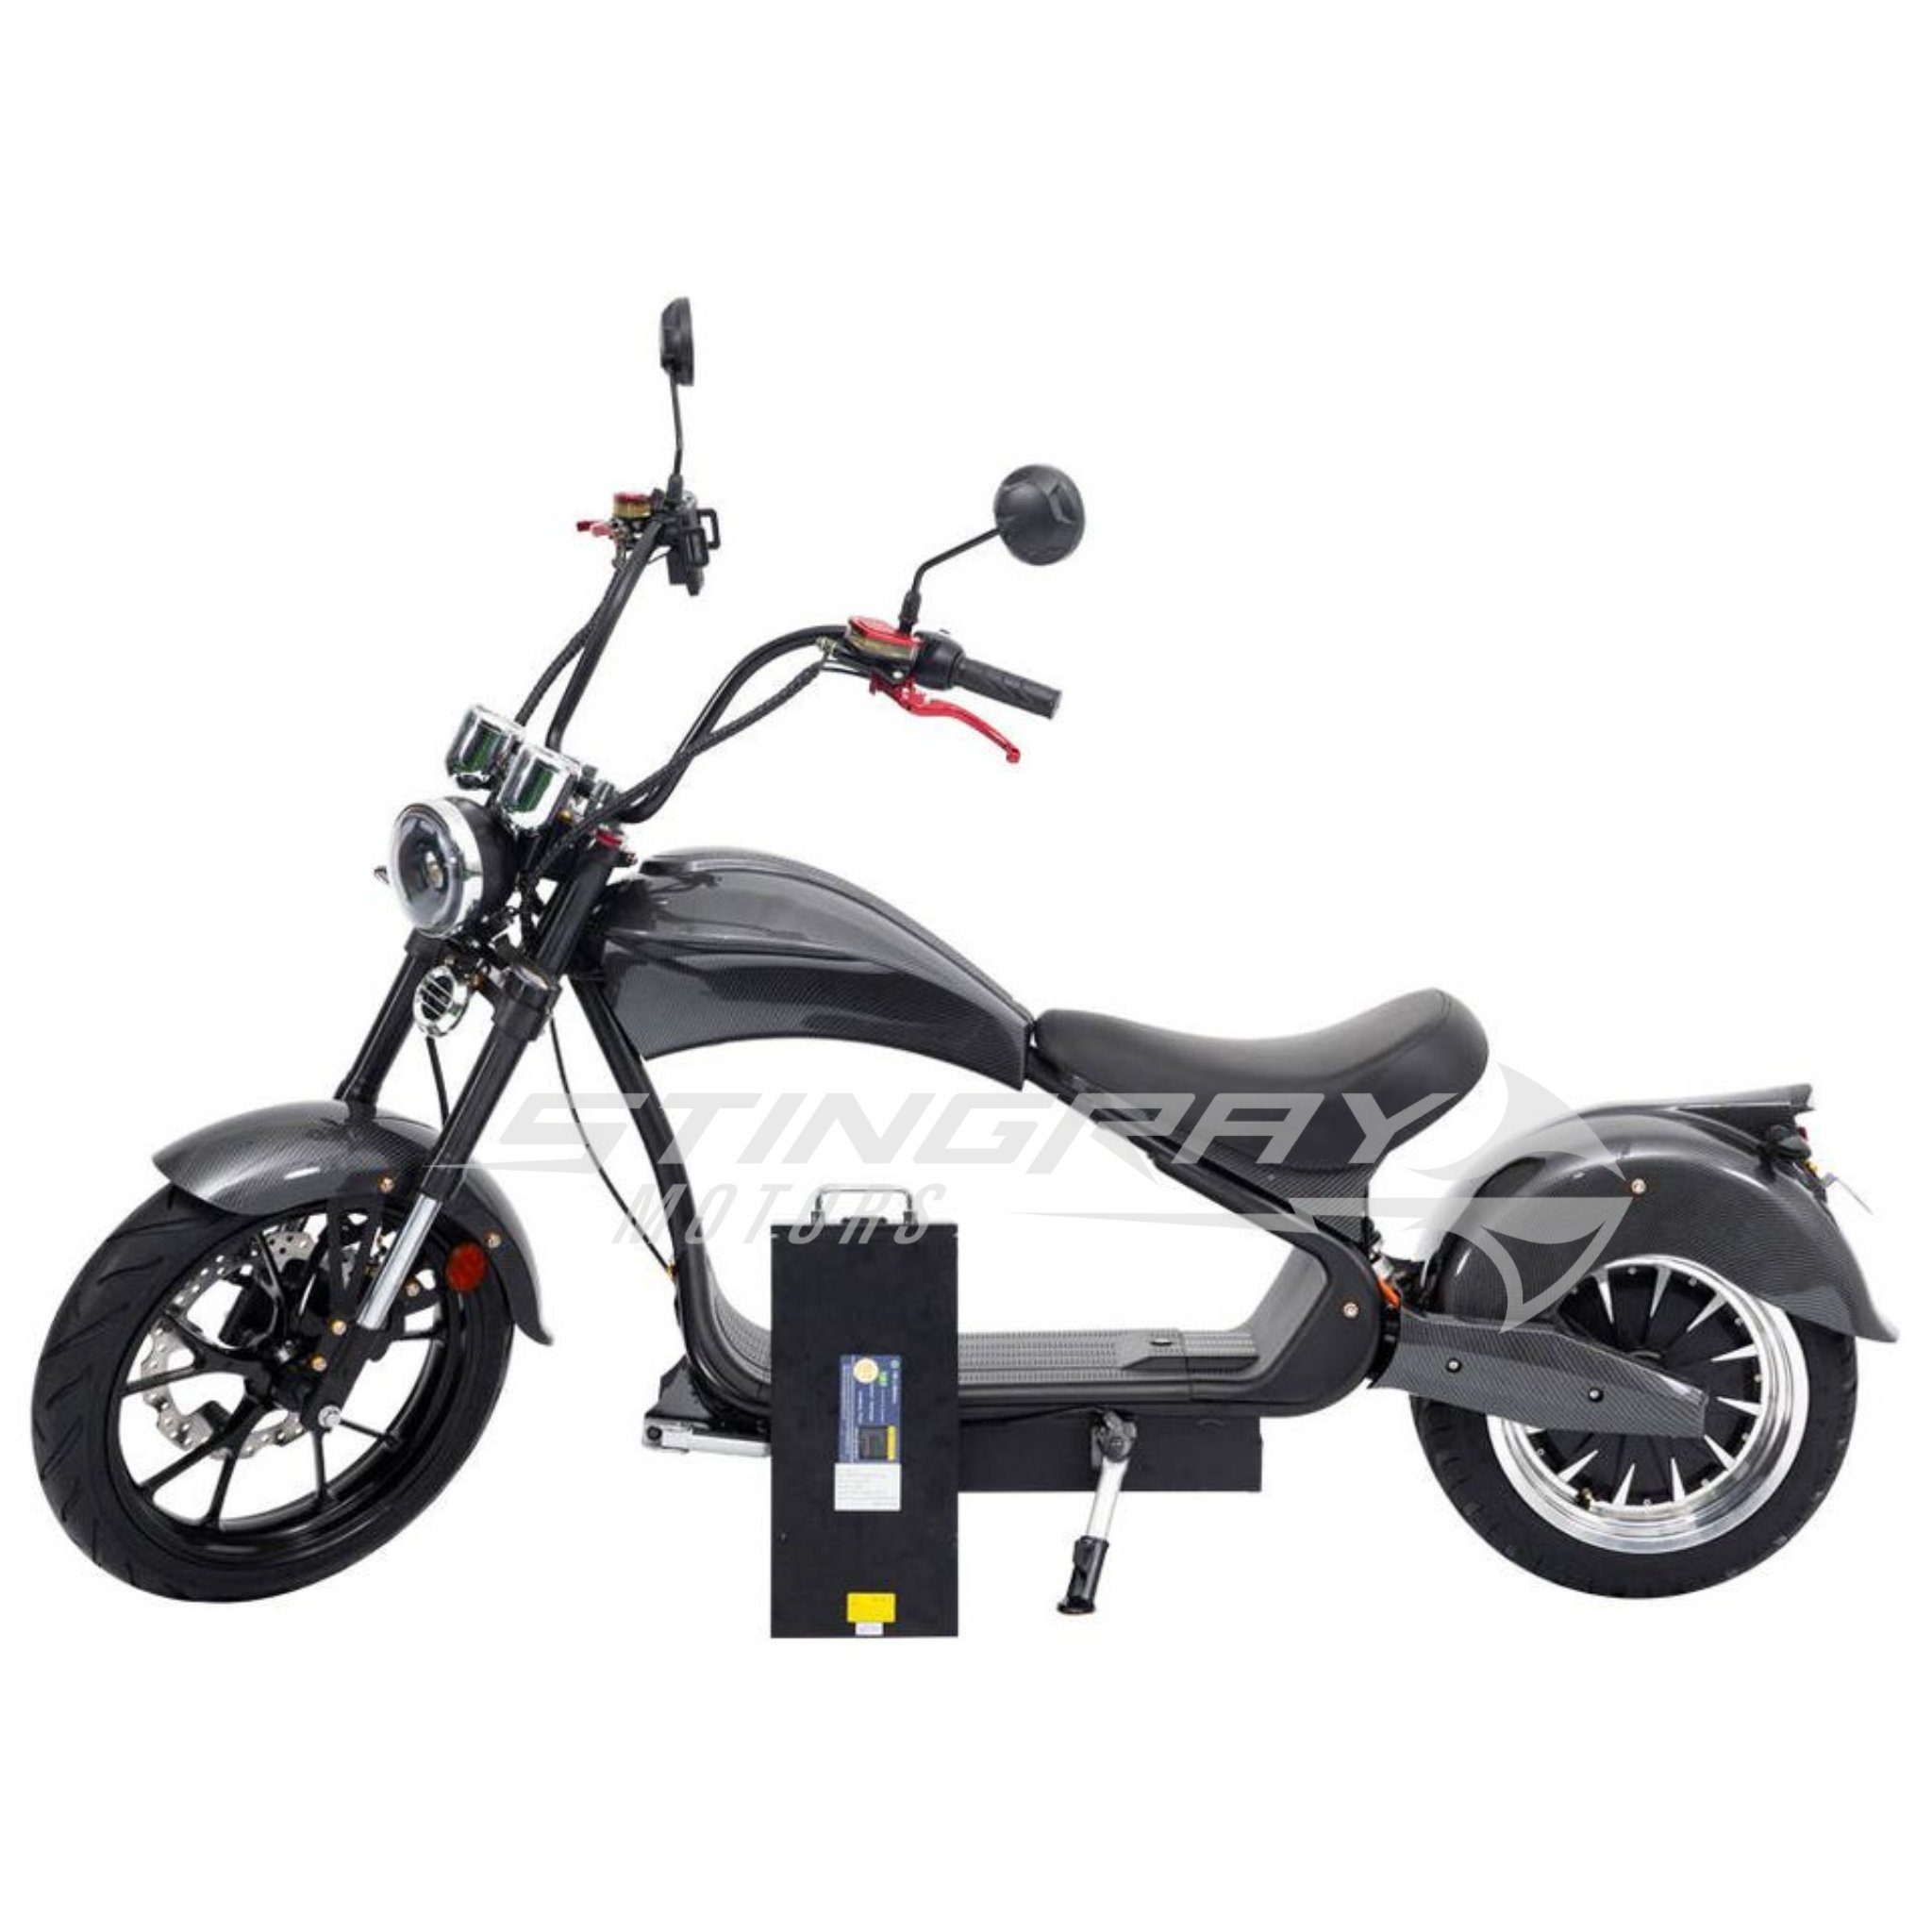 Stingray Motors E-Motorroller Elektroroller - Watt E Harley 50 Matt km/h MH3, - Chopper 4500,00 W, km/h Rot Roller - 50 4500